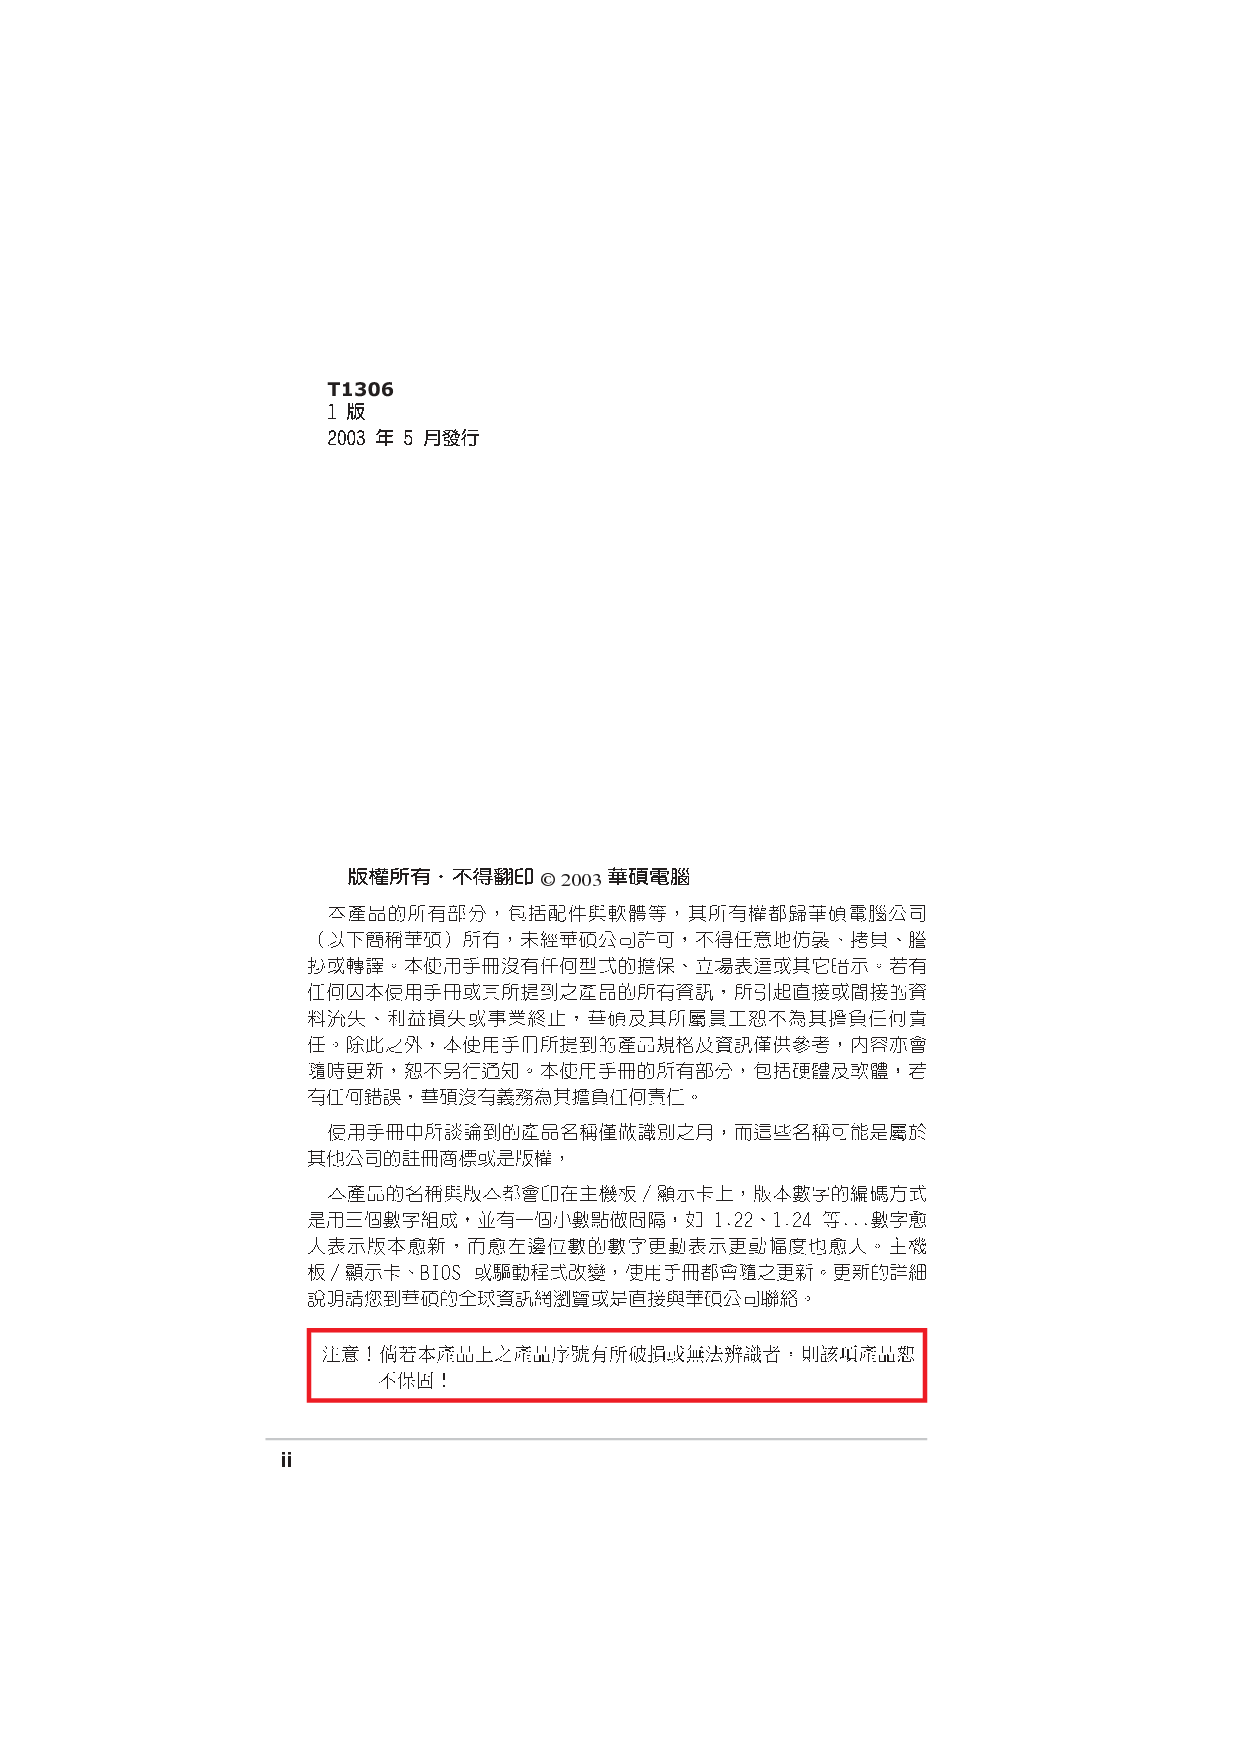 华硕 Asus A7N8X-VM 用户手册 第1页